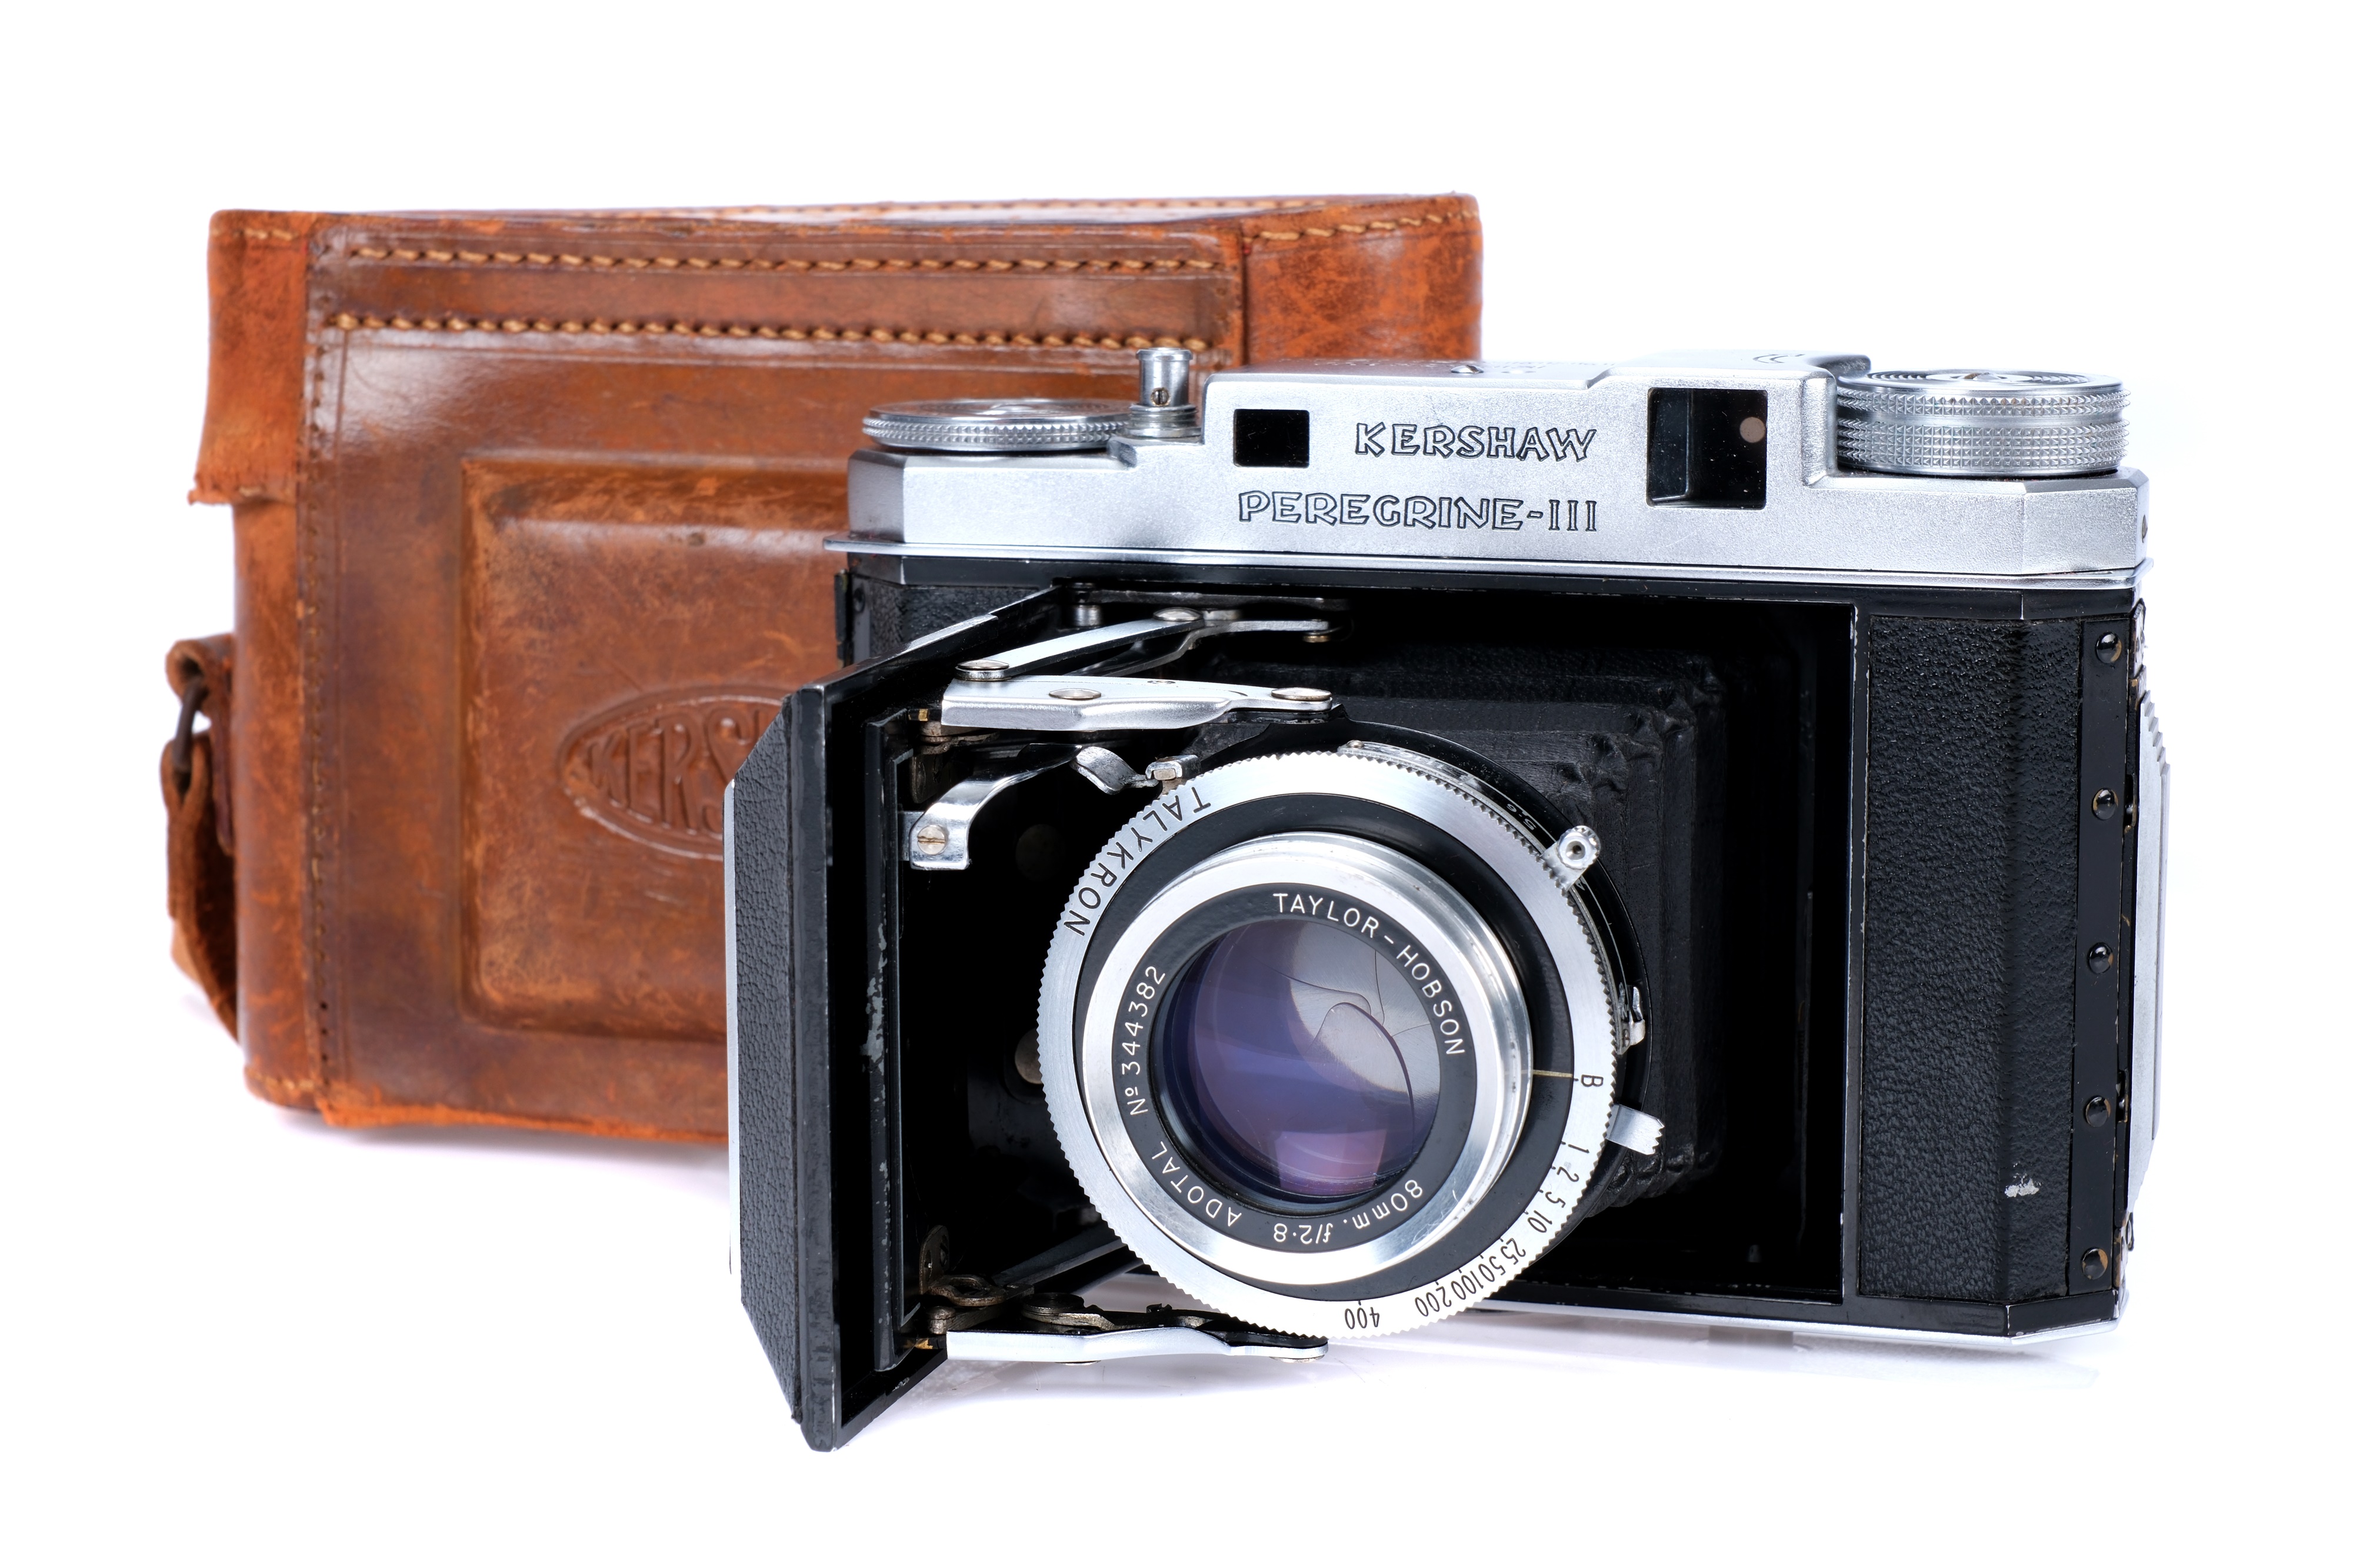 A Kershaw Peregrine III Rangefinder Camera,